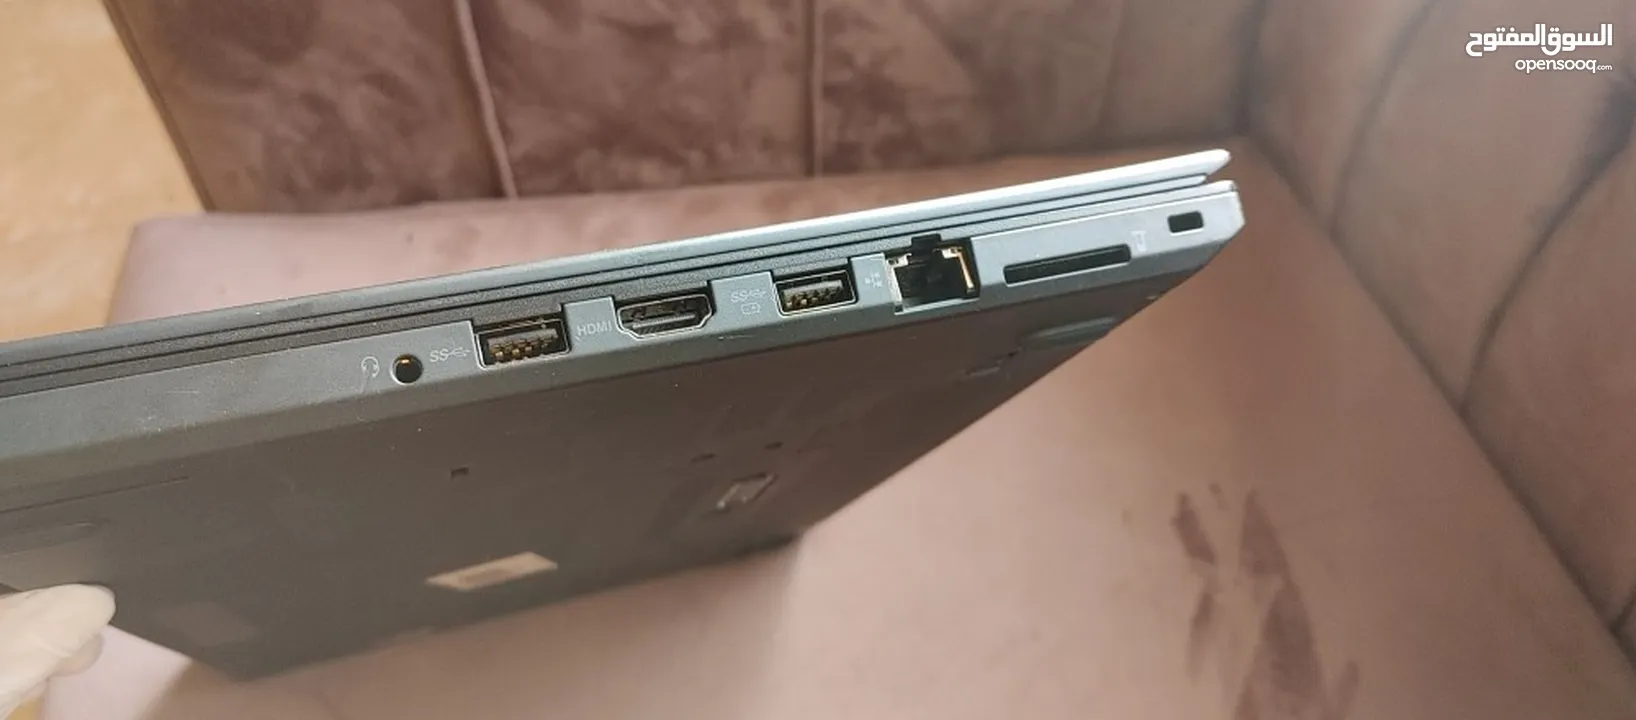 ThinkPad i7 vPro 16 GB LTE _ جهاز ثينك باد